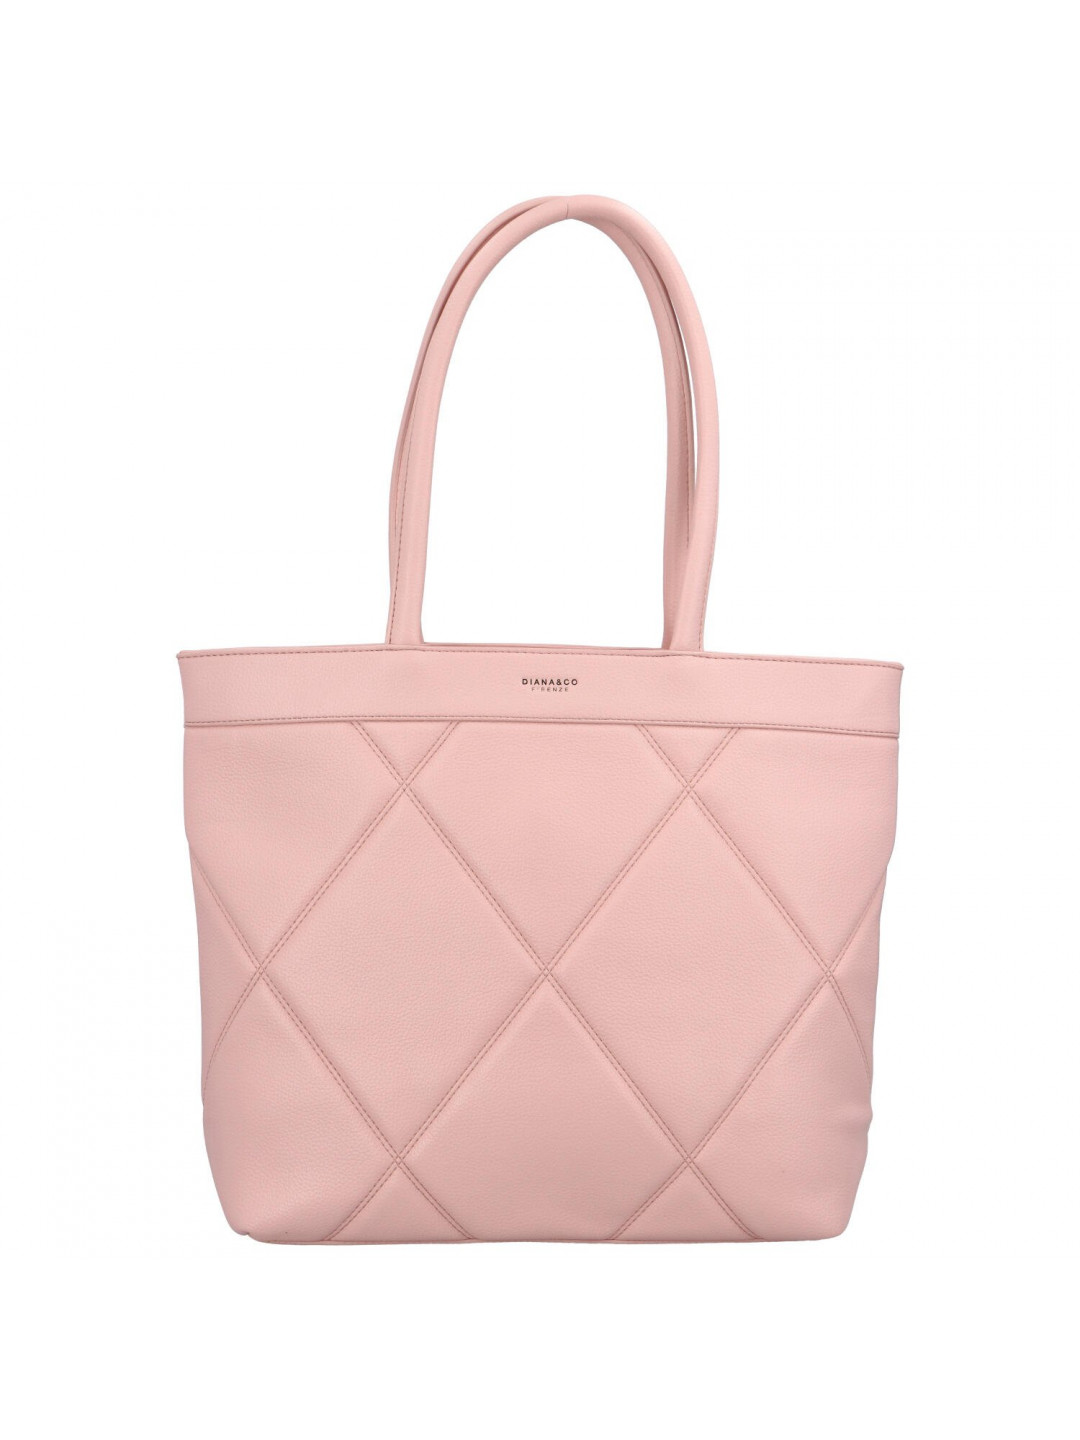 Dámská kabelka přes rameno světle růžová – DIANA & CO Blend